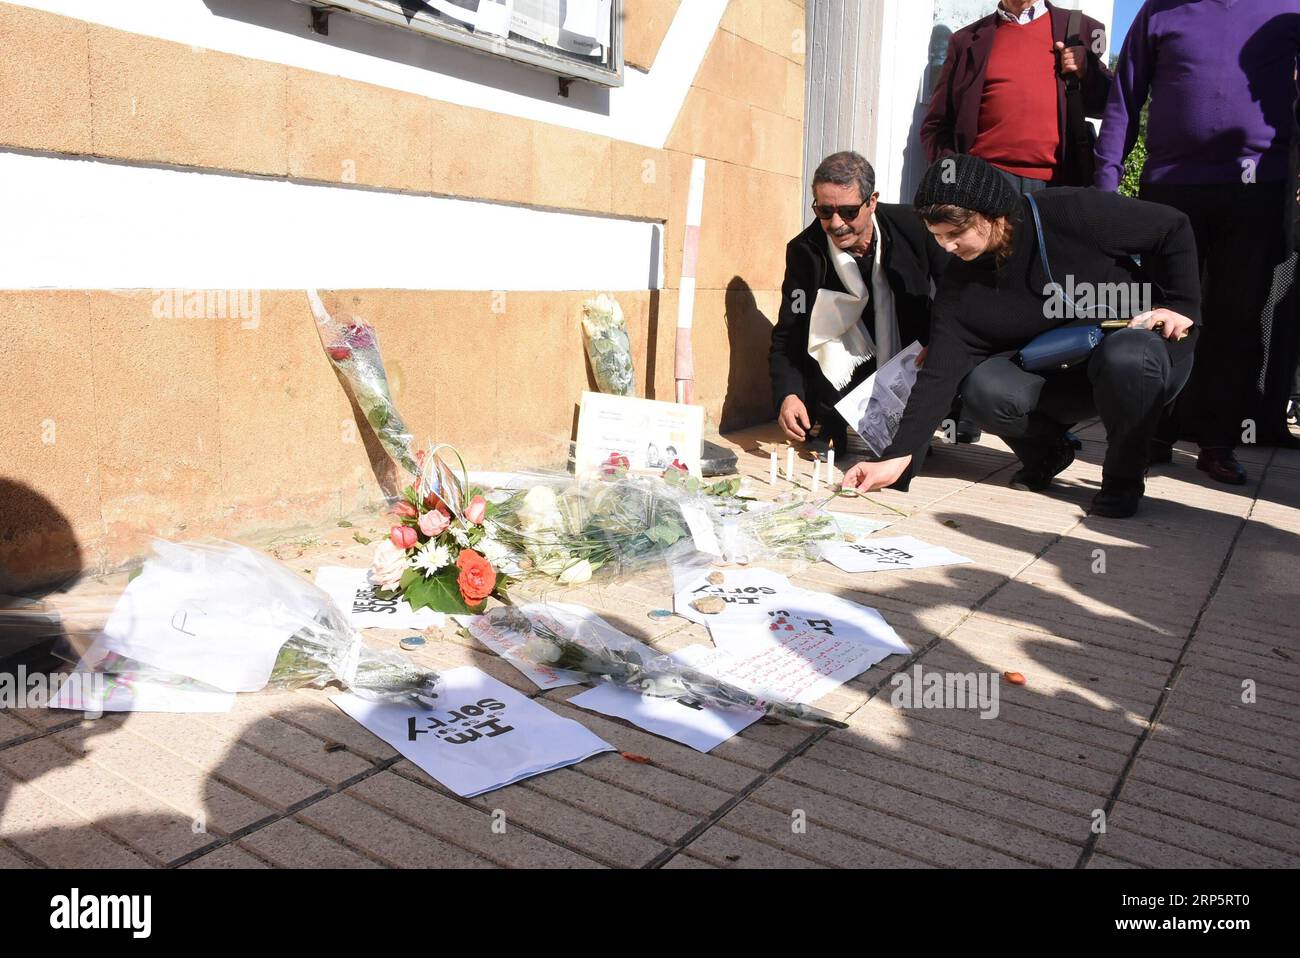 (181222) -- RABAT, 22 décembre 2018 -- des gens placent des bougies lors d'un rassemblement en soutien aux familles de deux touristes étrangers assassinés près de l'ambassade du Danemark à Rabat, au Maroc, le 22 décembre 2018. Les services de sécurité marocains ont arrêté neuf personnes en raison de leurs liens présumés avec les quatre assassins présumés de deux touristes étrangers dans une zone montagneuse du centre du Maroc, a annoncé vendredi le ministère de l'intérieur. Les corps de deux femmes touristes, une danoise et une norvégienne, ont été retrouvés lundi près du village touristique d'Imlil, à 60 km de la ville de Marrakech. MAROC-RABAT-ÉTRANGER TOURISME Banque D'Images